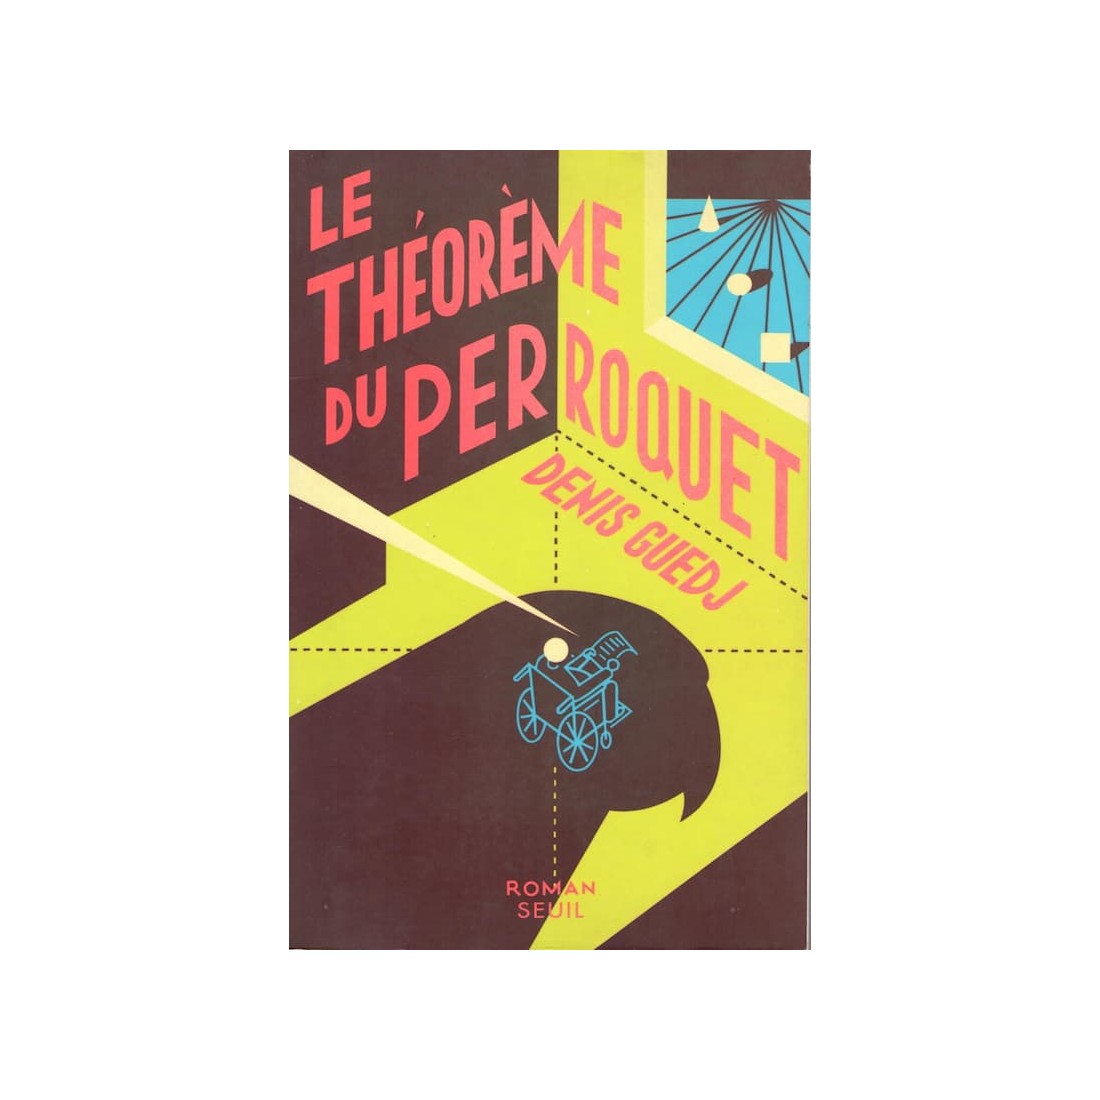 Le théorème du perroquet - Roman de Denis Guedj - Ocazlivres.com